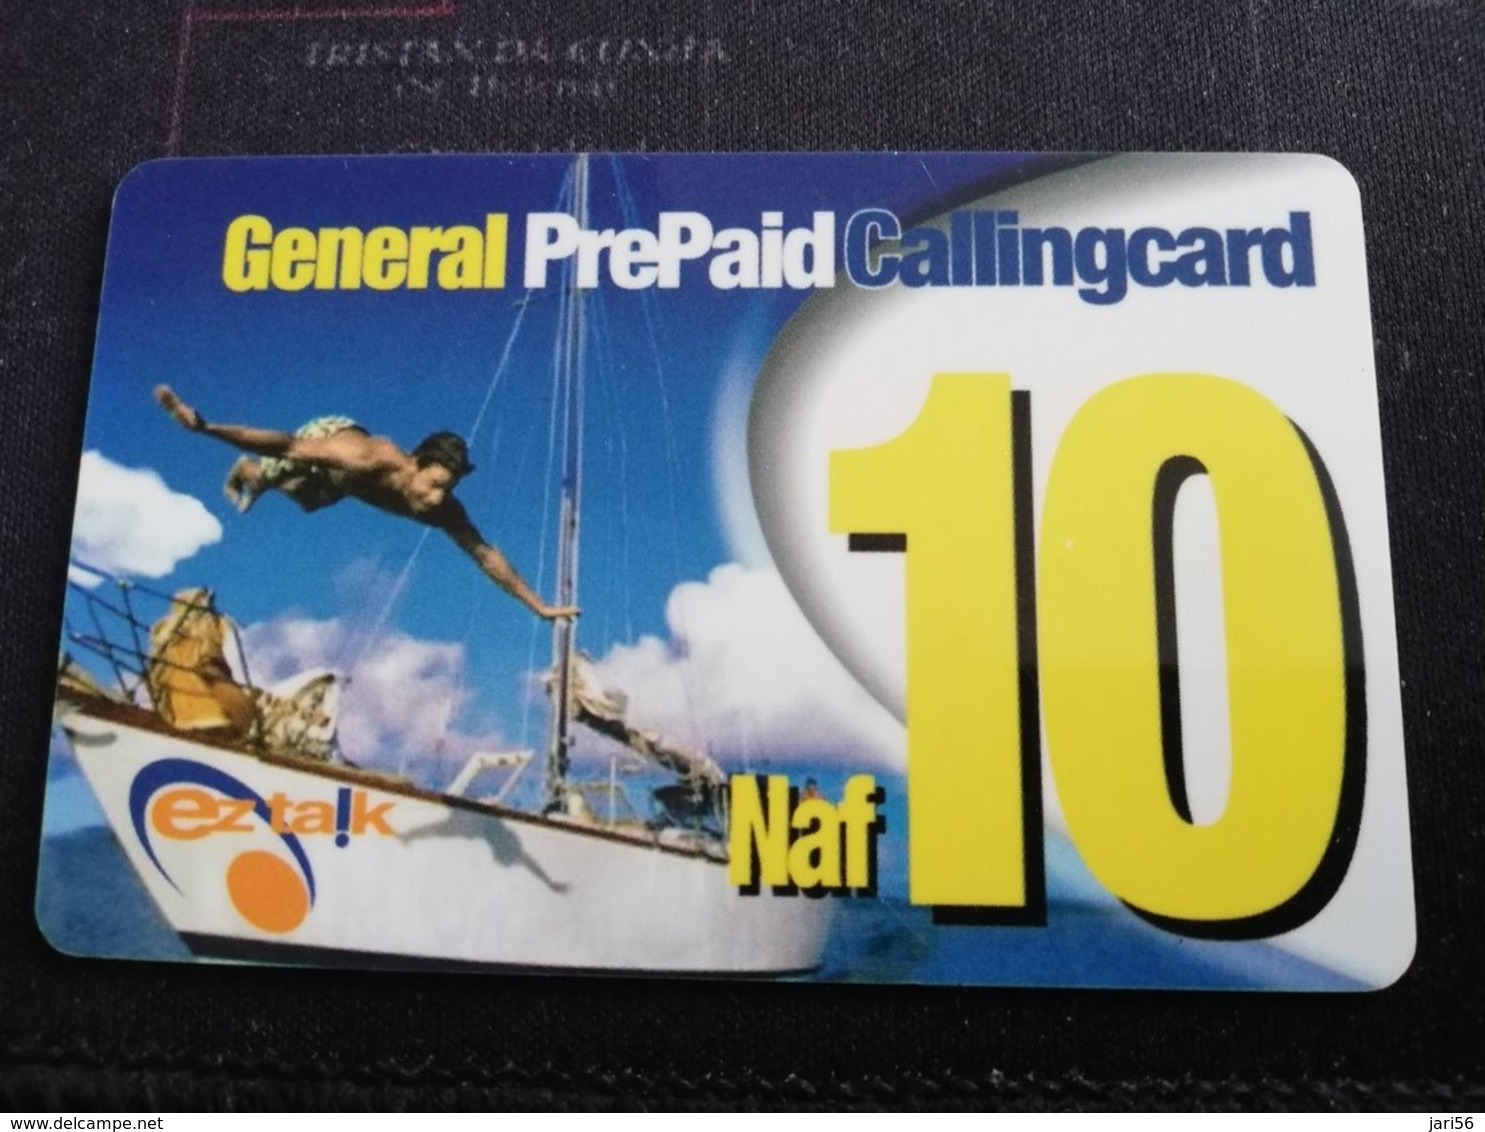 CURACAO NAF 10  GENERAL PREPAID CALLINGCARD, EZ TALK  THICK CARD     ** 957** - Antillen (Niederländische)